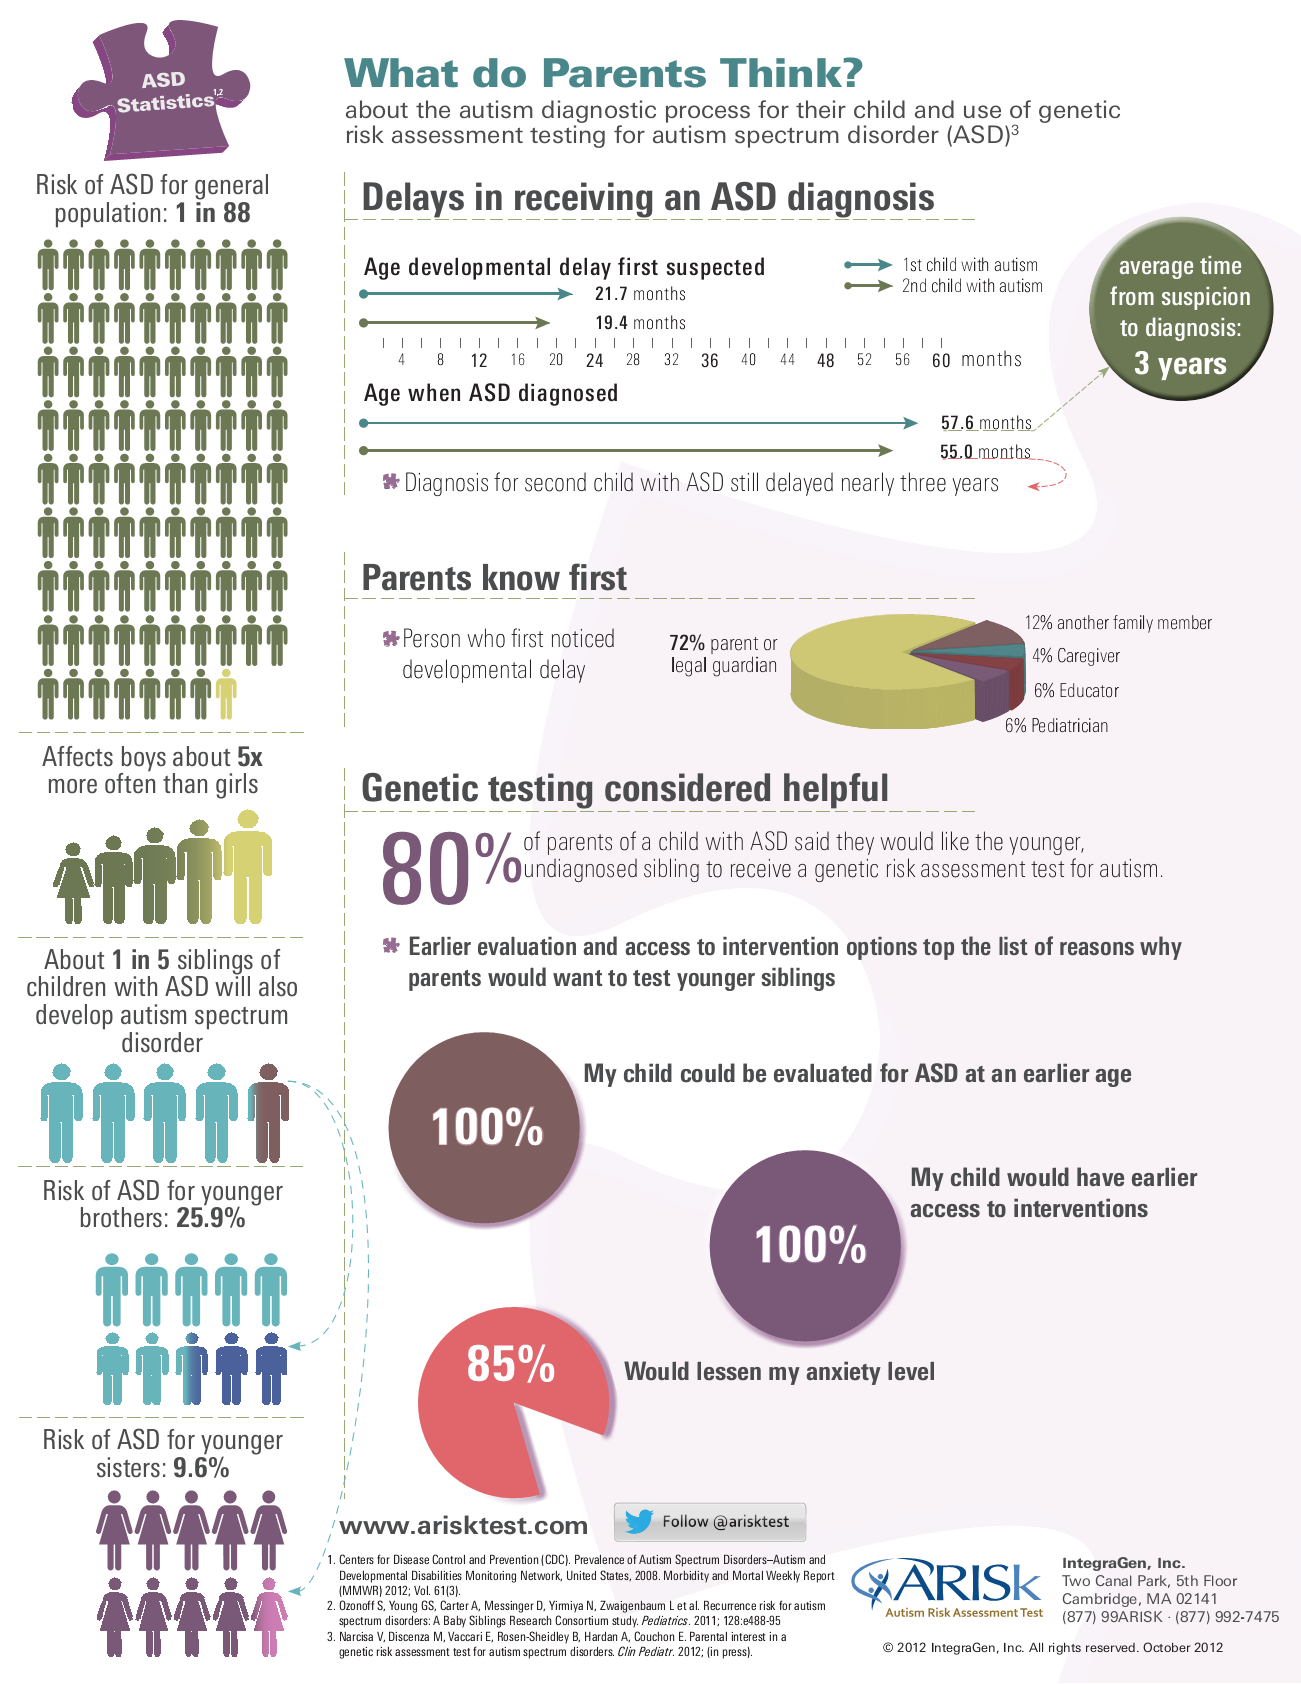 Parental Survey Statistics